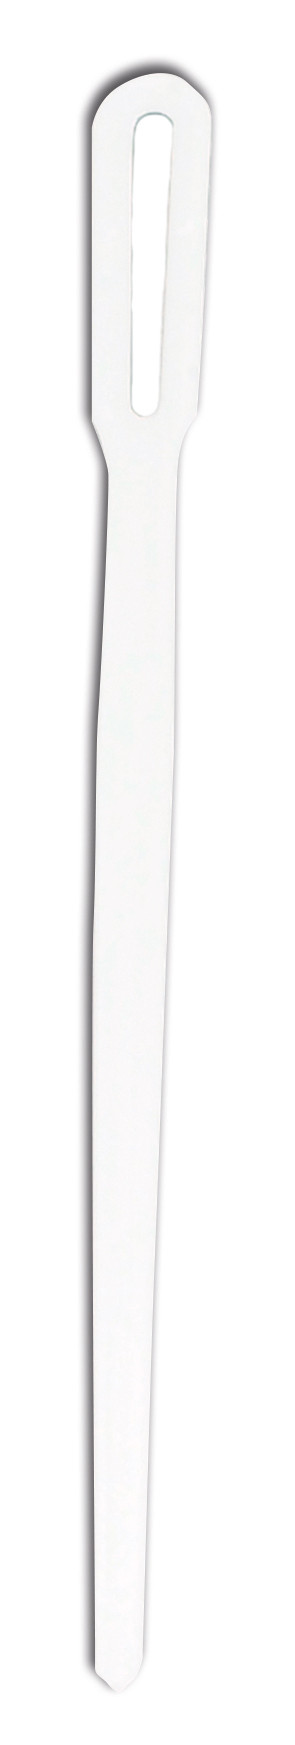 5: Rørepind, hvid, i disp.,2000stk. plast Polystyren 11,2 cm